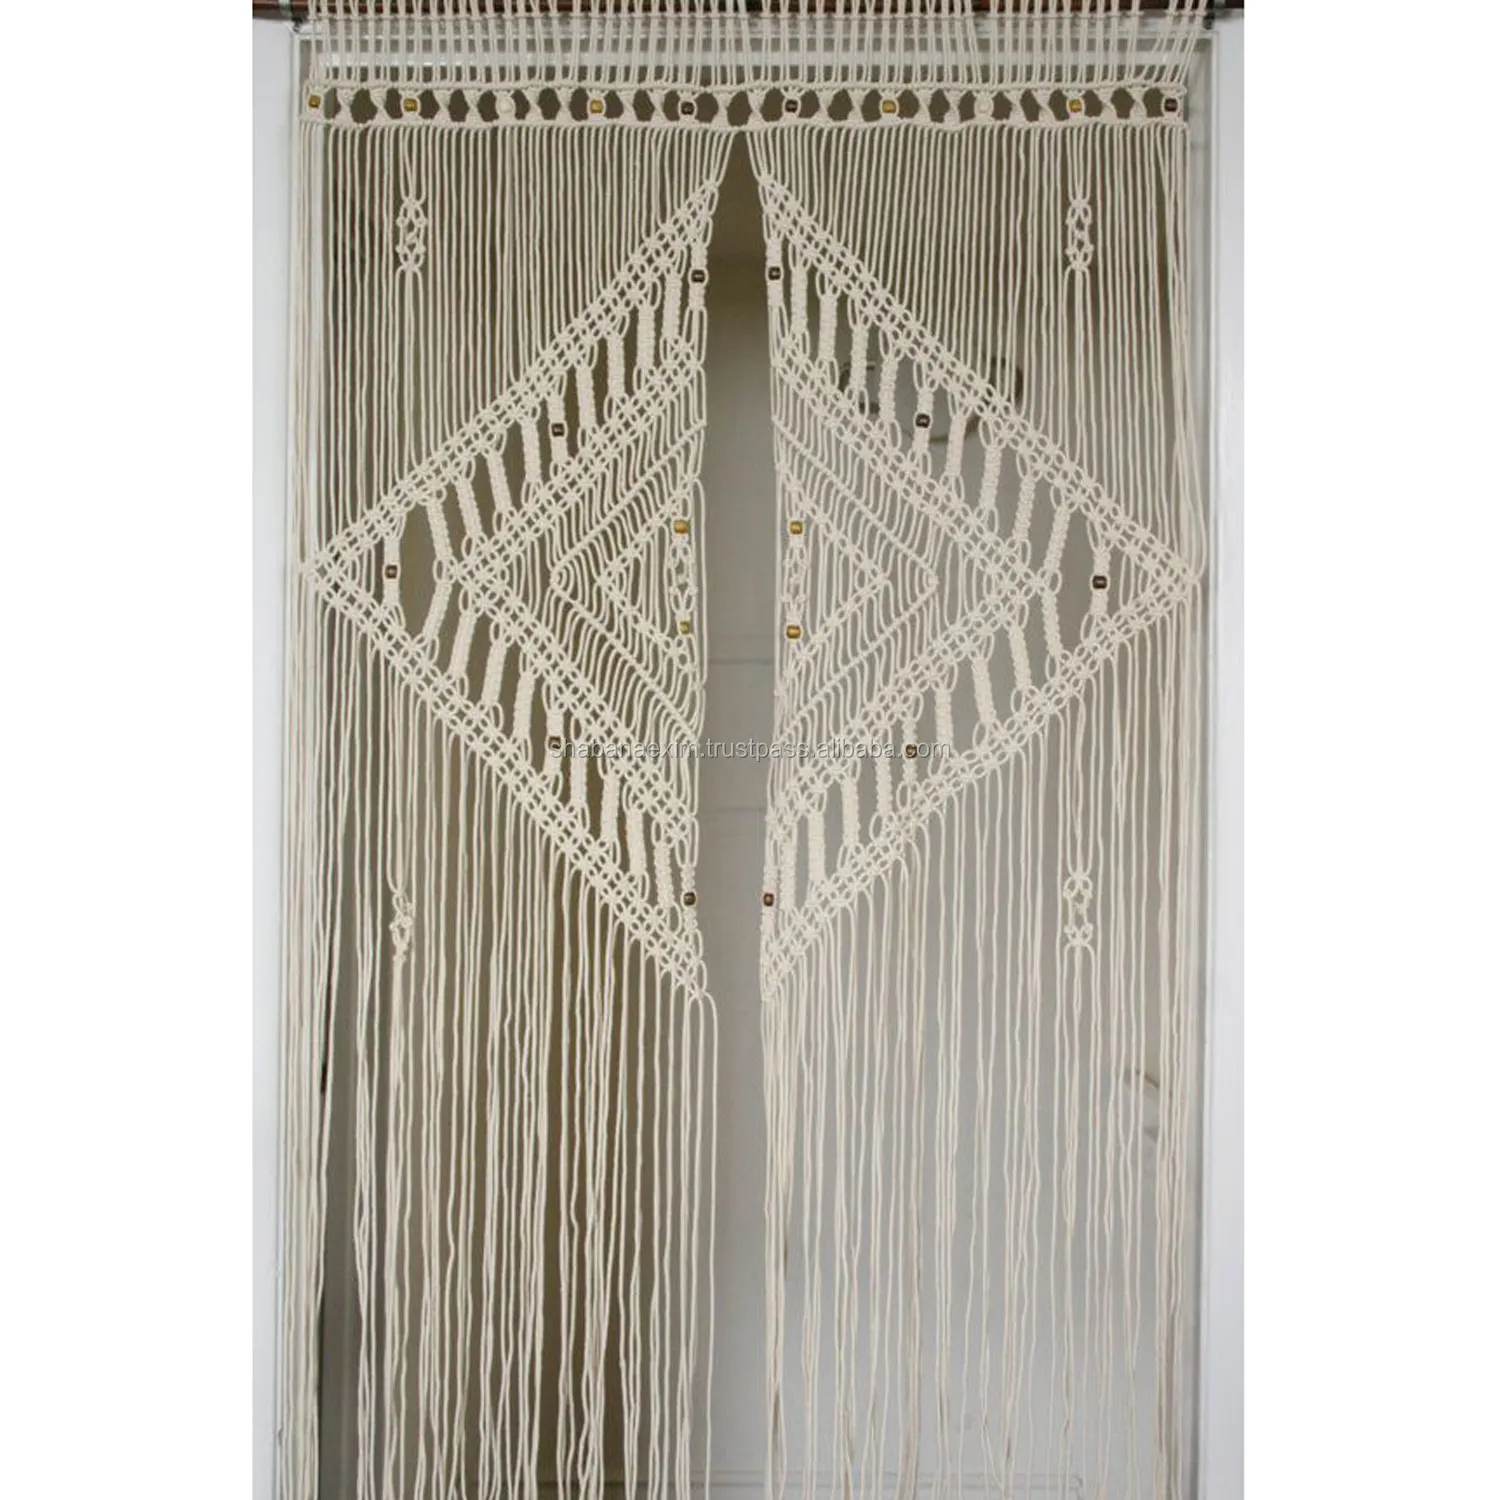 Tende in macramè per finestra fondali e tende da sposa in macramè bohémien fatti a mano in cotone Made in India